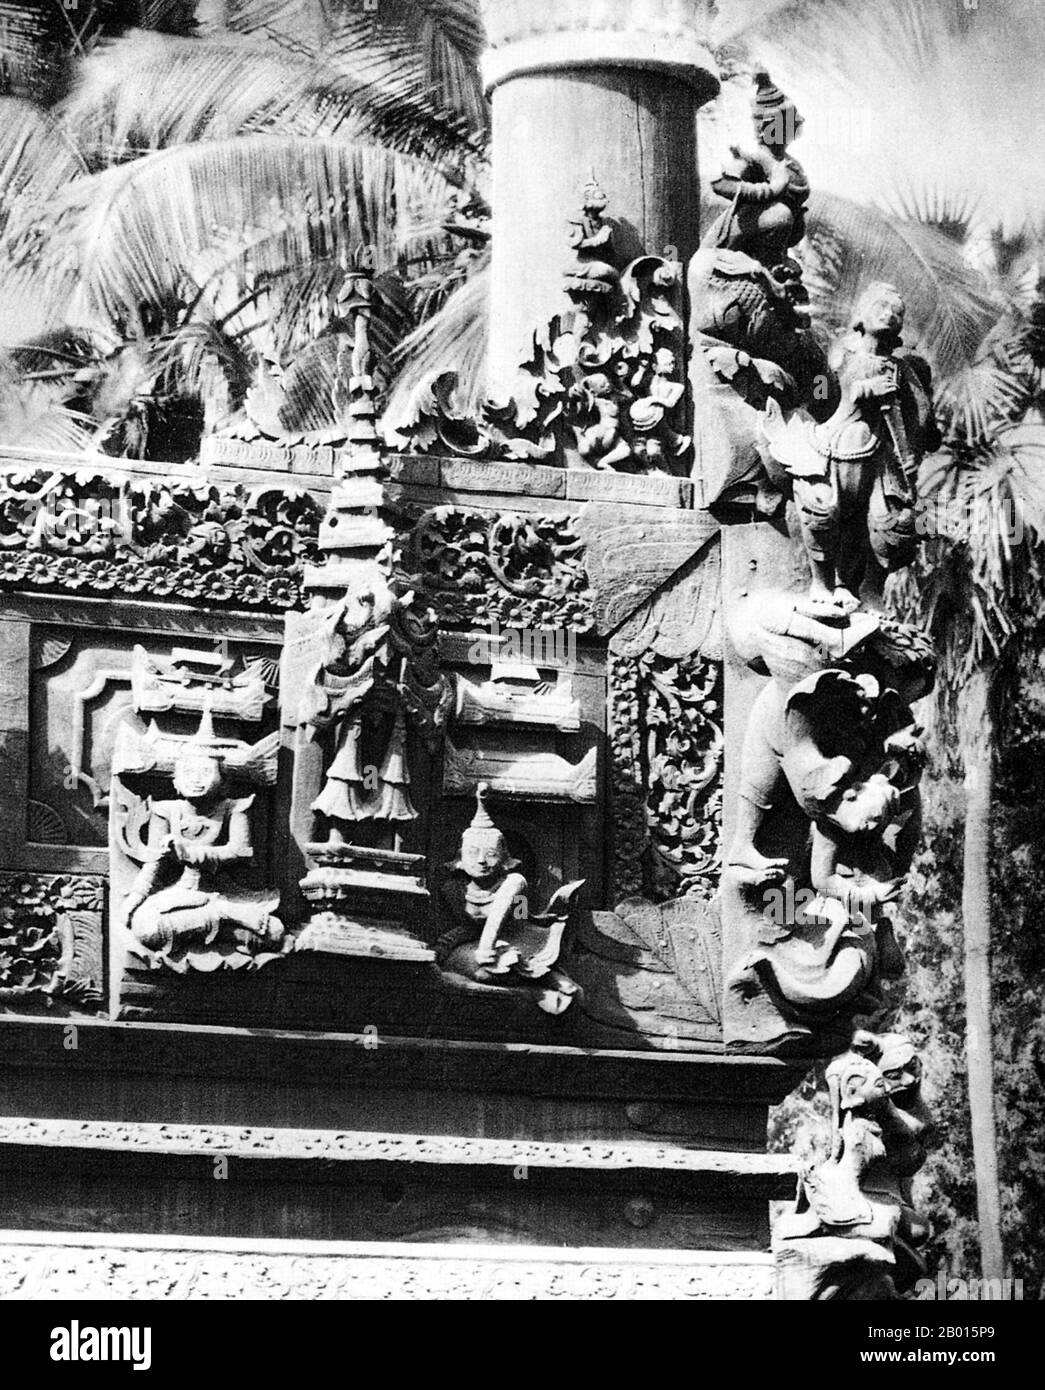 Birmanie/Myanmar: Sculptures sur bois dans un monastère bouddhiste de Monywa, haute-Birmanie, c. années 1920. La ville birmane de Monywa se trouve dans la division de Sagaing, à 136 km au nord-ouest de Mandalay, sur la rive est de la rivière Chindwin. La légende attribue la première doctrine bouddhiste en Birmanie à 228 BCE lorsque Sohn Uttar Sthavira, un des moines royaux de l'empereur Ashoka le Grand de l'Inde, est venu au pays avec d'autres moines et textes sacrés. Cependant, l'ère du bouddhisme a vraiment commencé au XIe siècle après que le roi Anawrahta de Pagan (Bagan) a été converti au bouddhisme Theravada. Banque D'Images